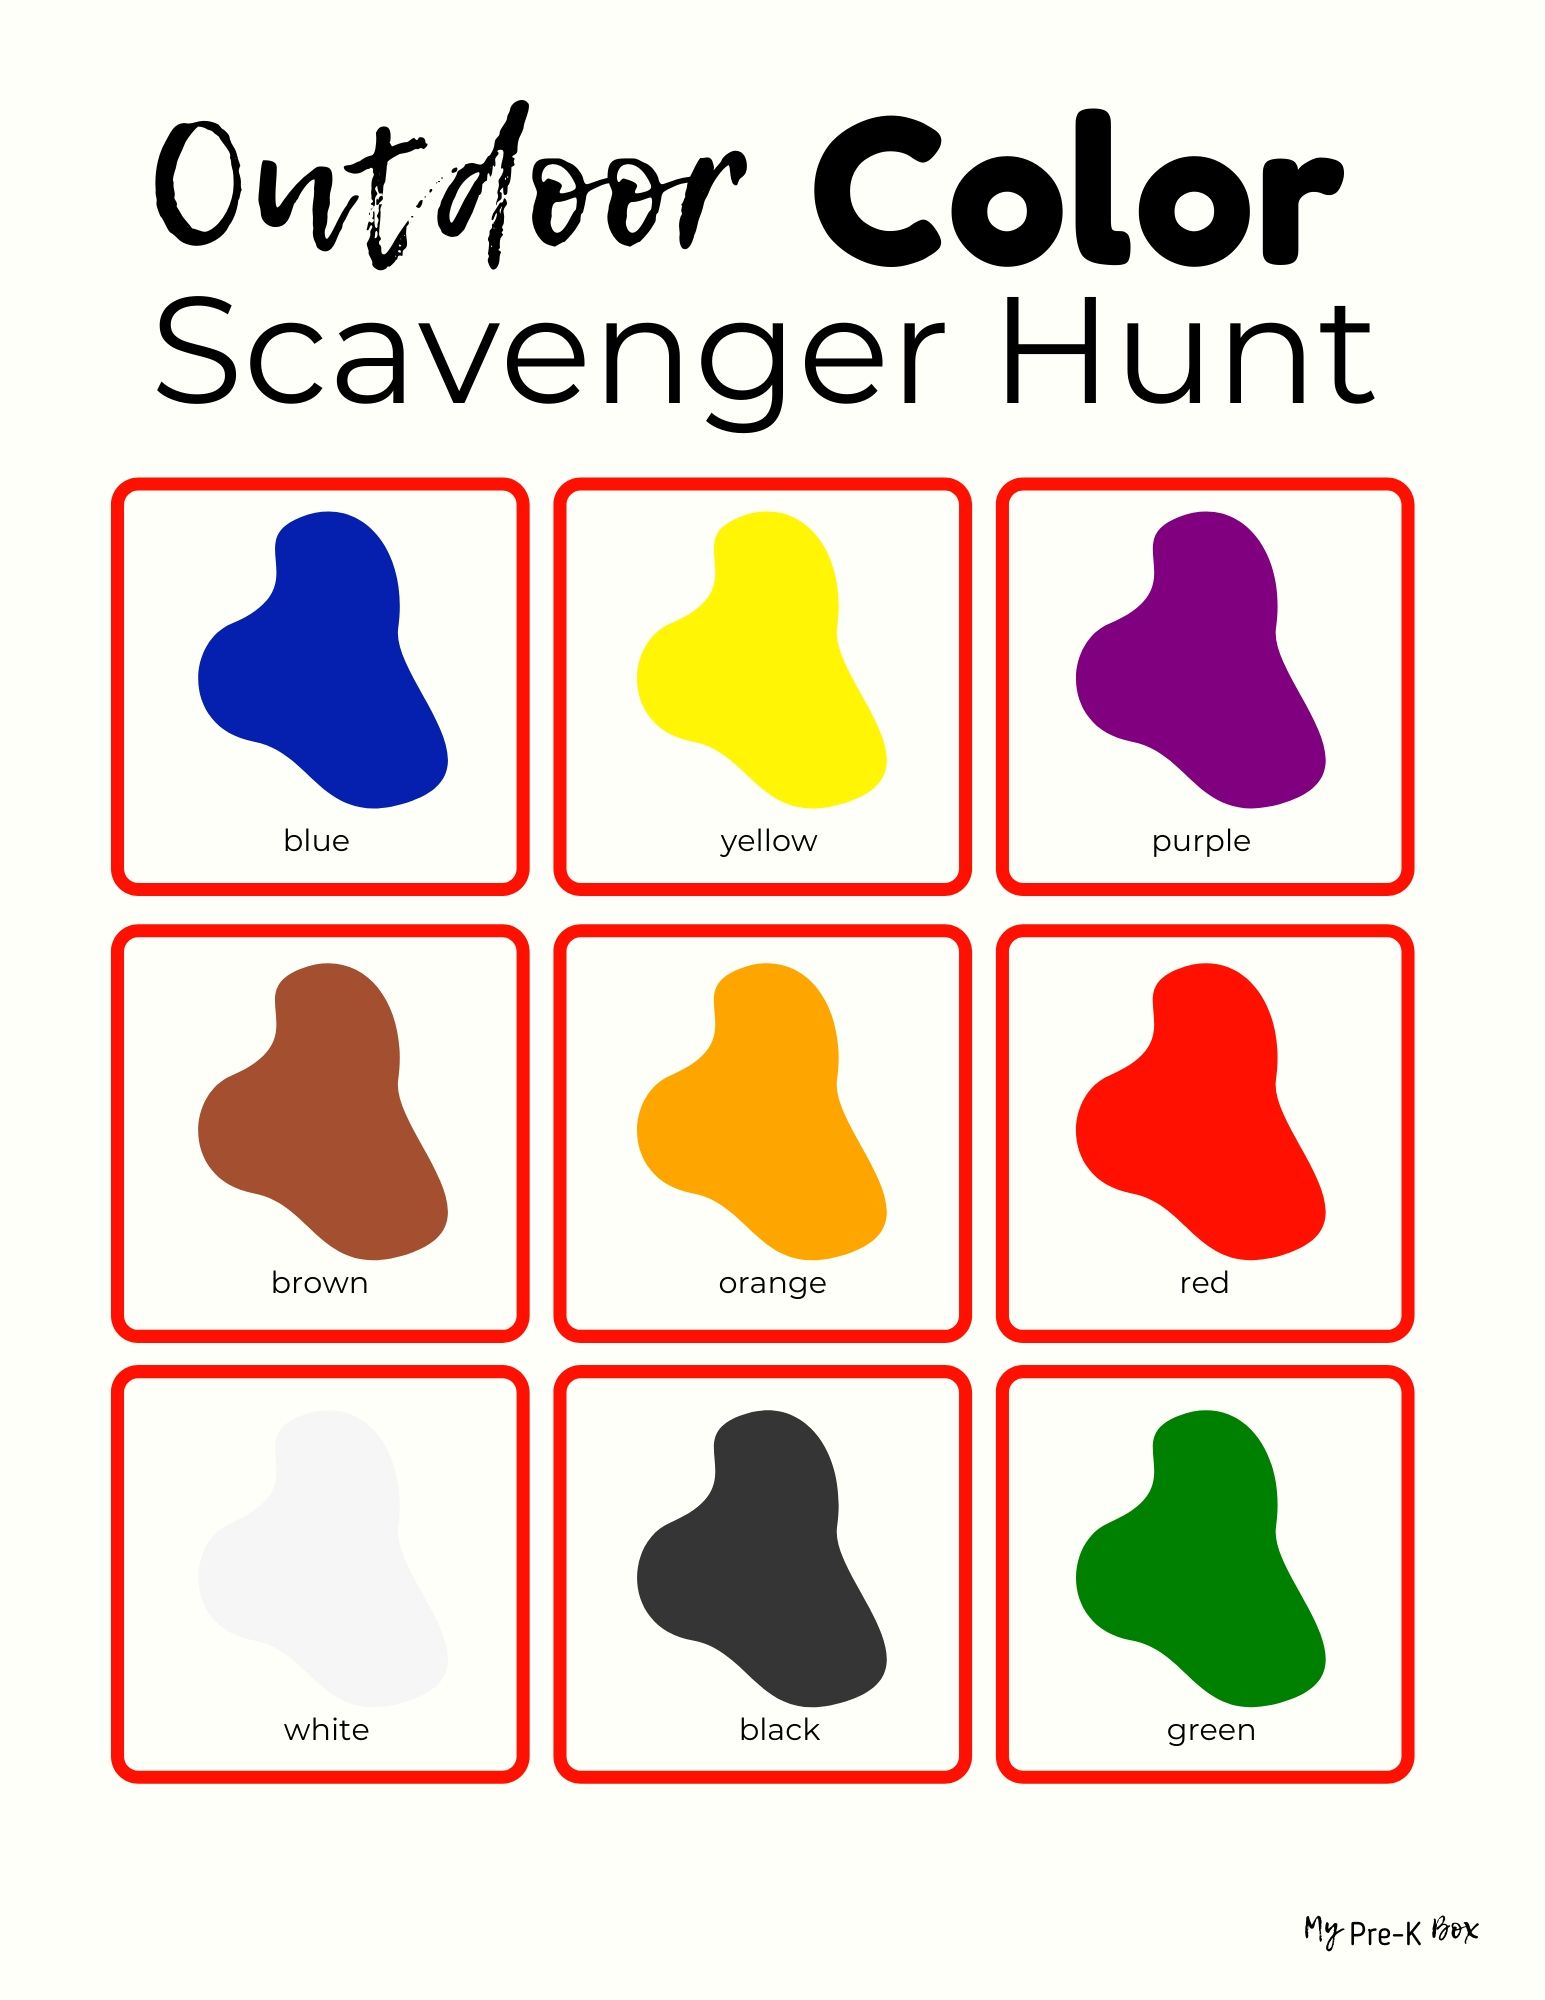 1570-my-pre-k-box-color-scavenger-hunt-board.jpg